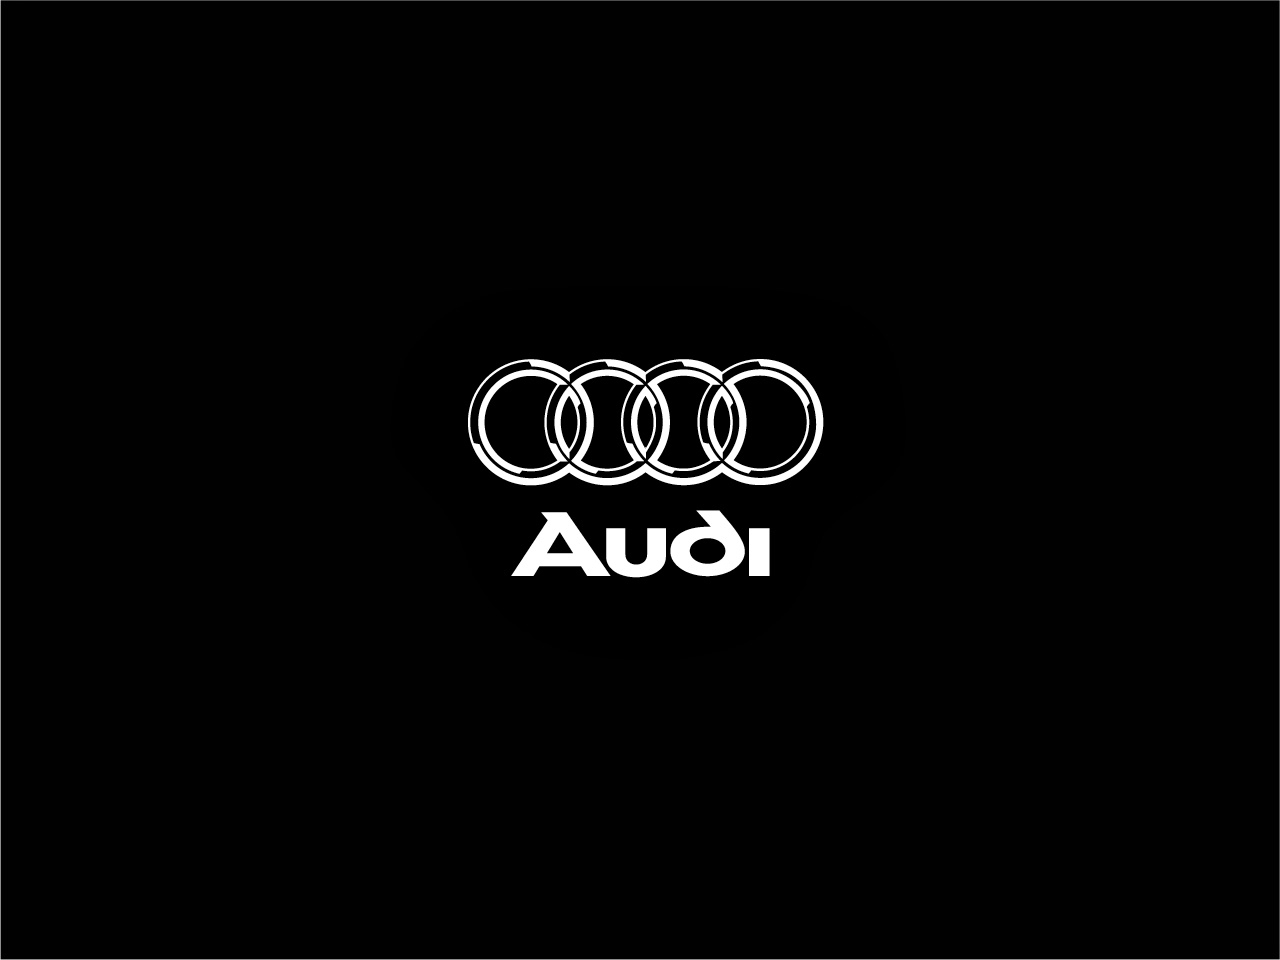 Audi rings wallpaper